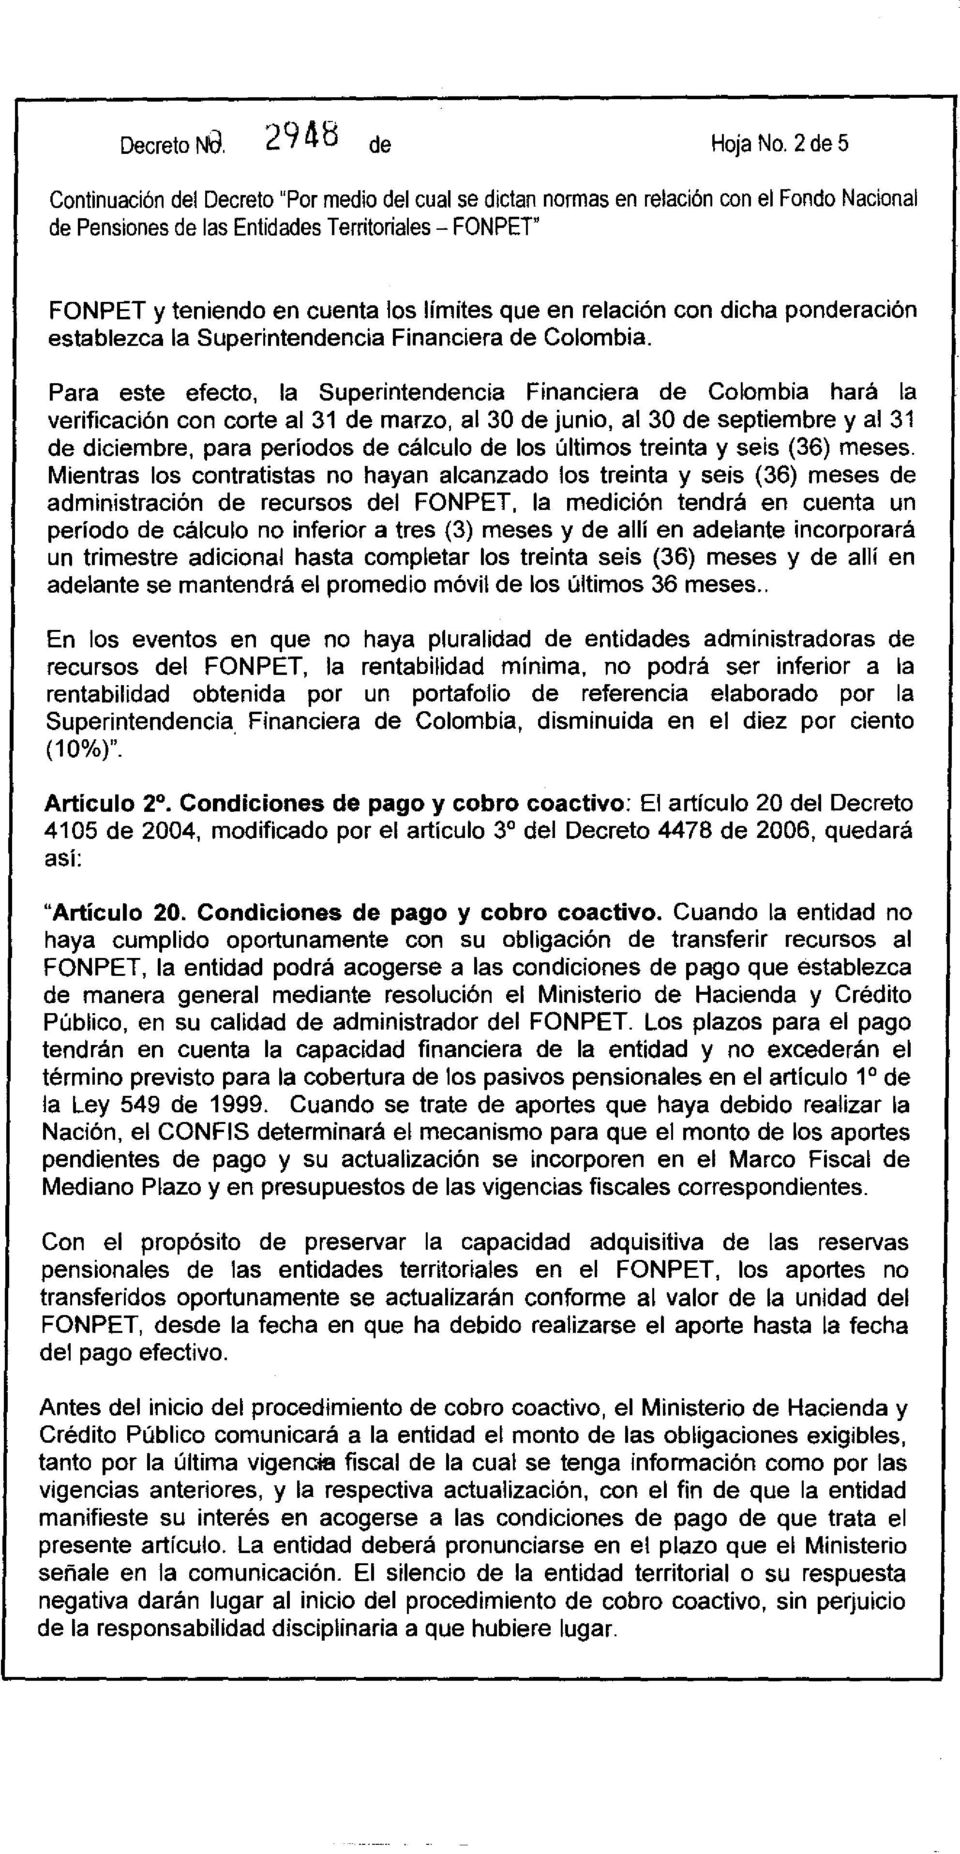 Para este efecto, la Superintendencia Financiera de Colombia hará la verificación con corte al 31 de marzo, al 30 de junio, al 30 de septiembre y al 31 de diciembre, para períodos de cálculo de los